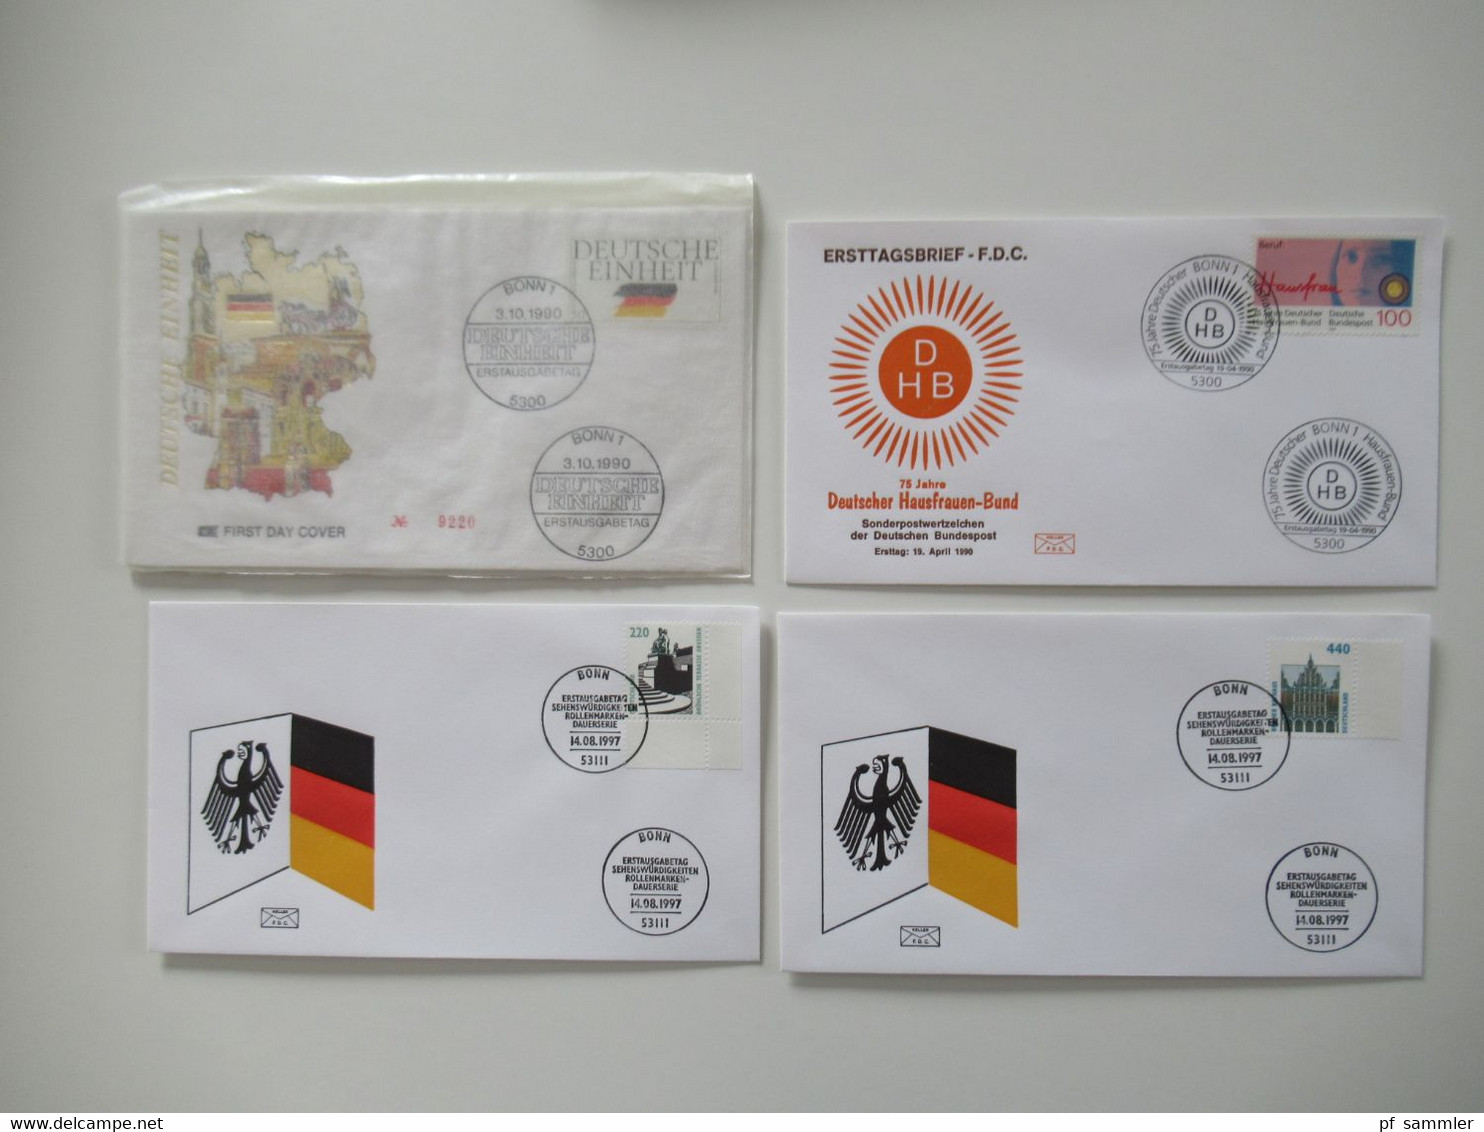 BRD 1980 / 90er teilw. bis 2001 Jahre FDC Posten mit 200 Stück bei den Freimarken auch Randstücke dabei! inkl. ATM Nr.1